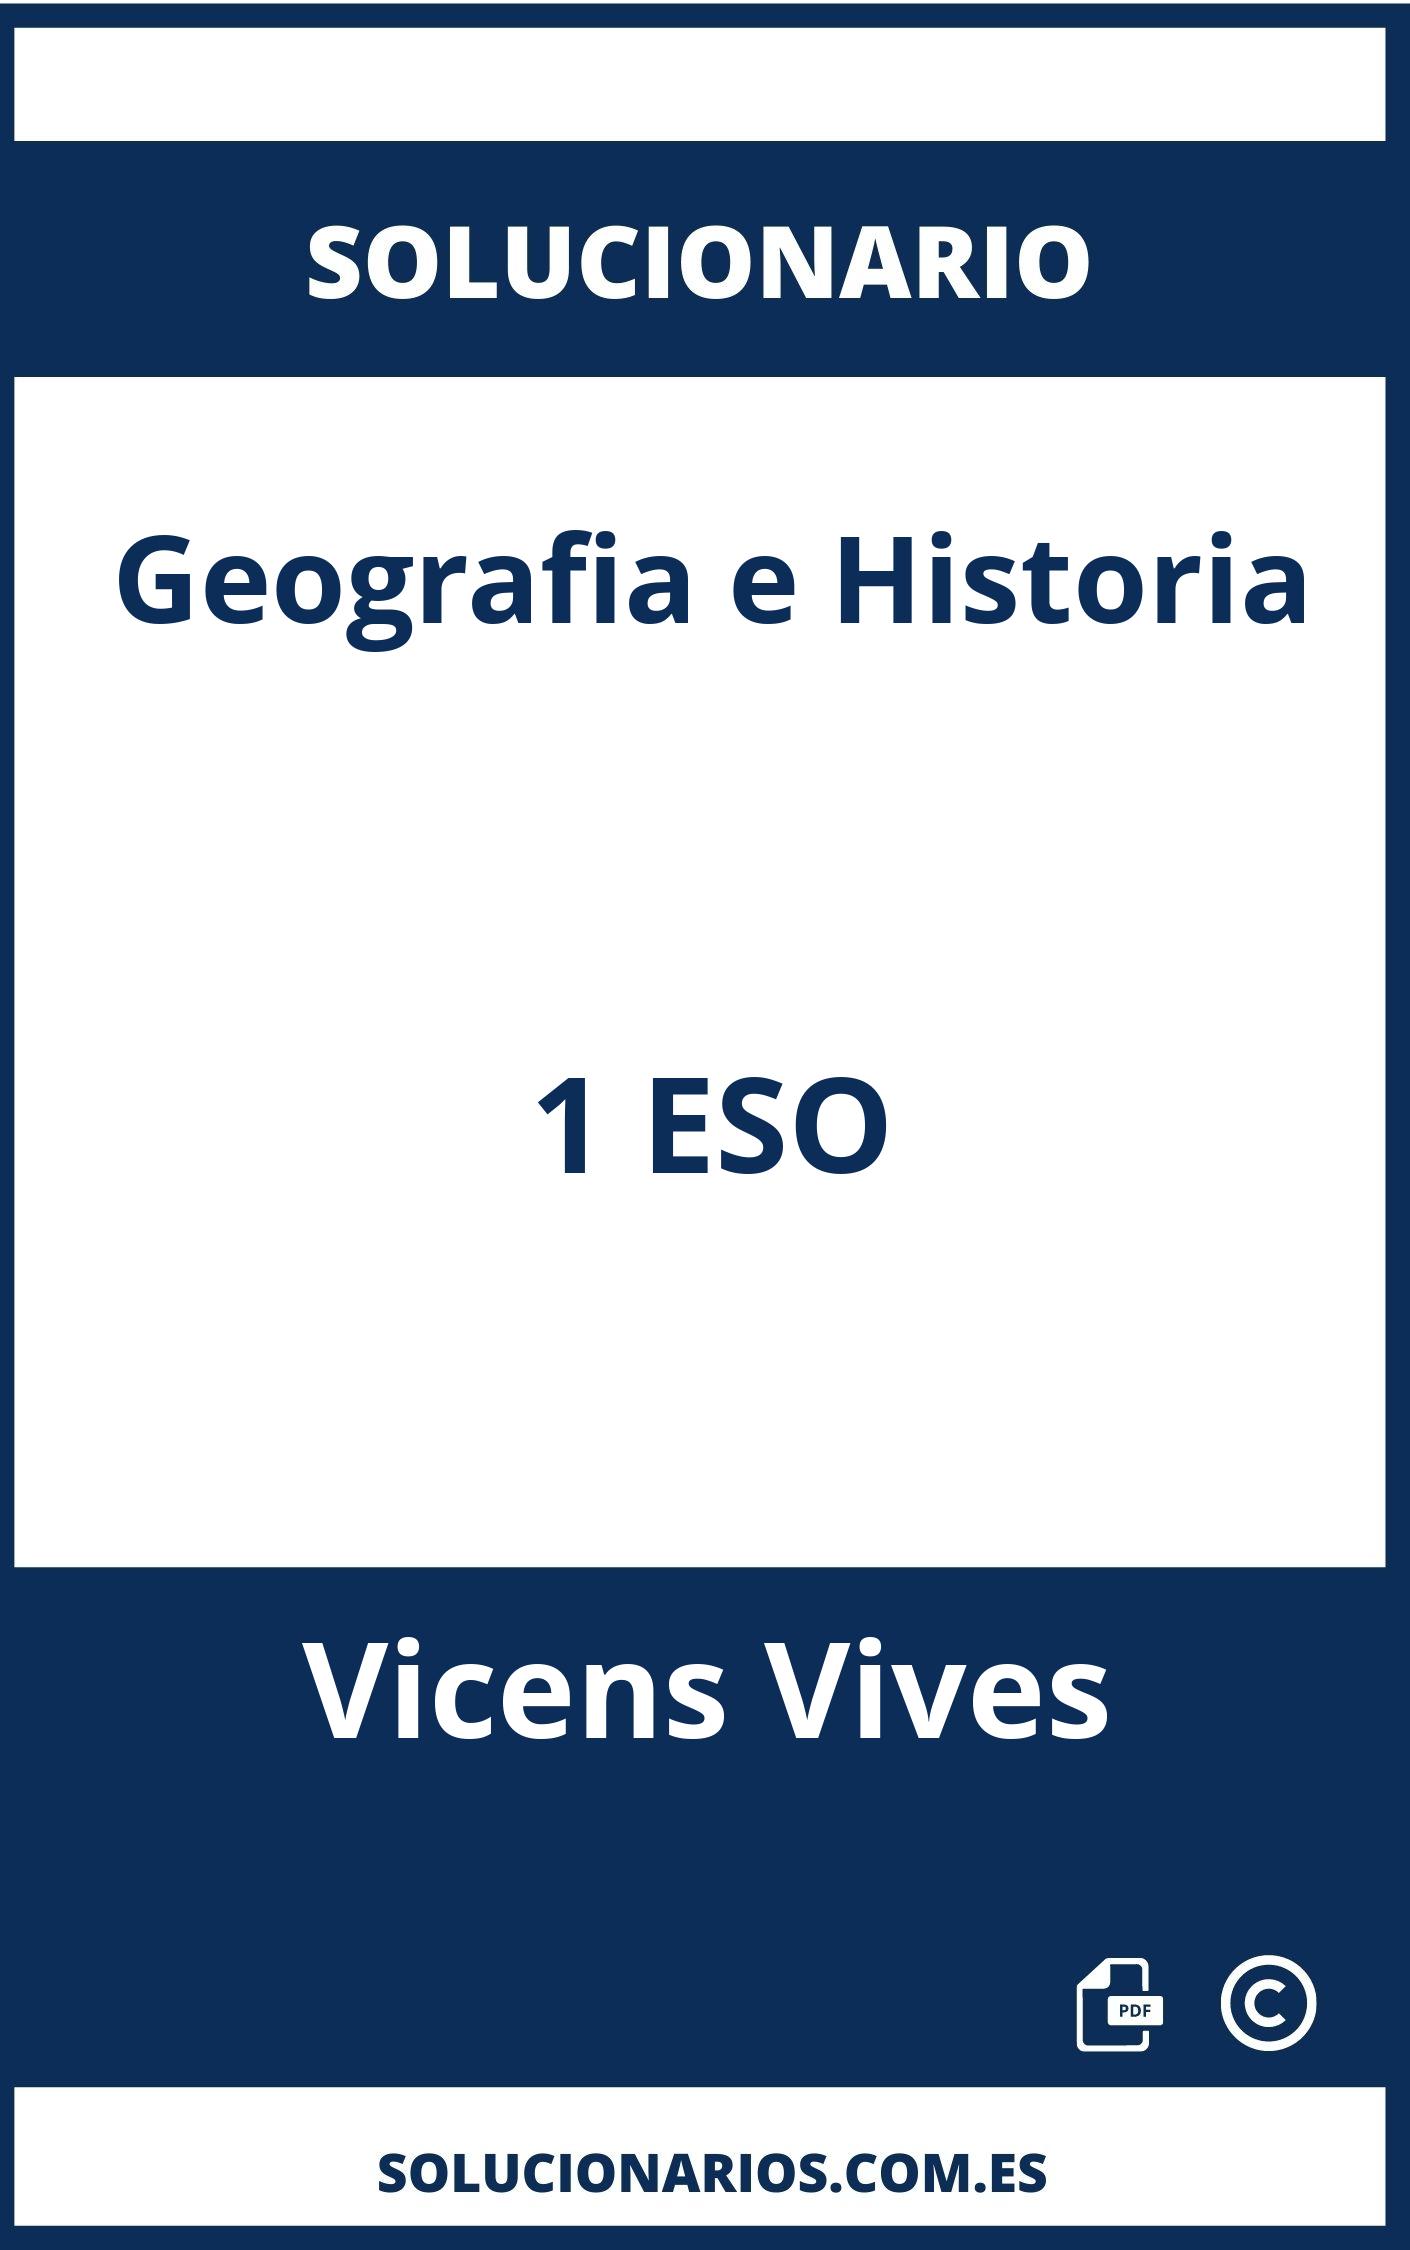 Solucionario Geografia e Historia 1 ESO Vicens Vives